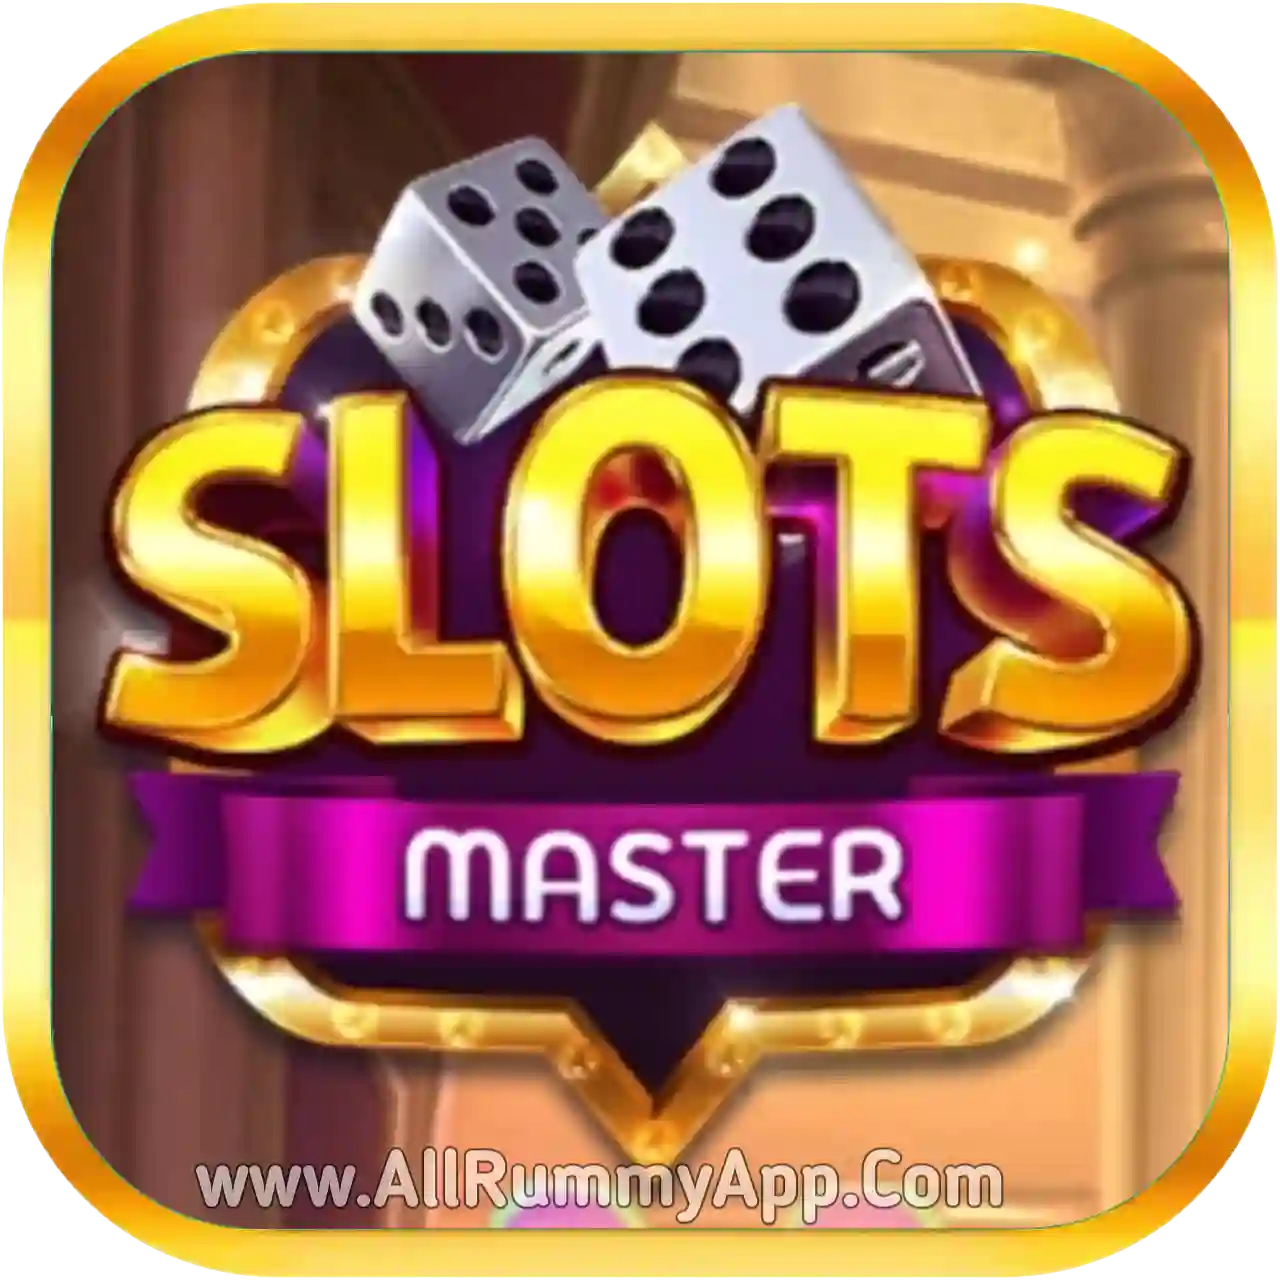 Slots Master - Happy Ace Casino